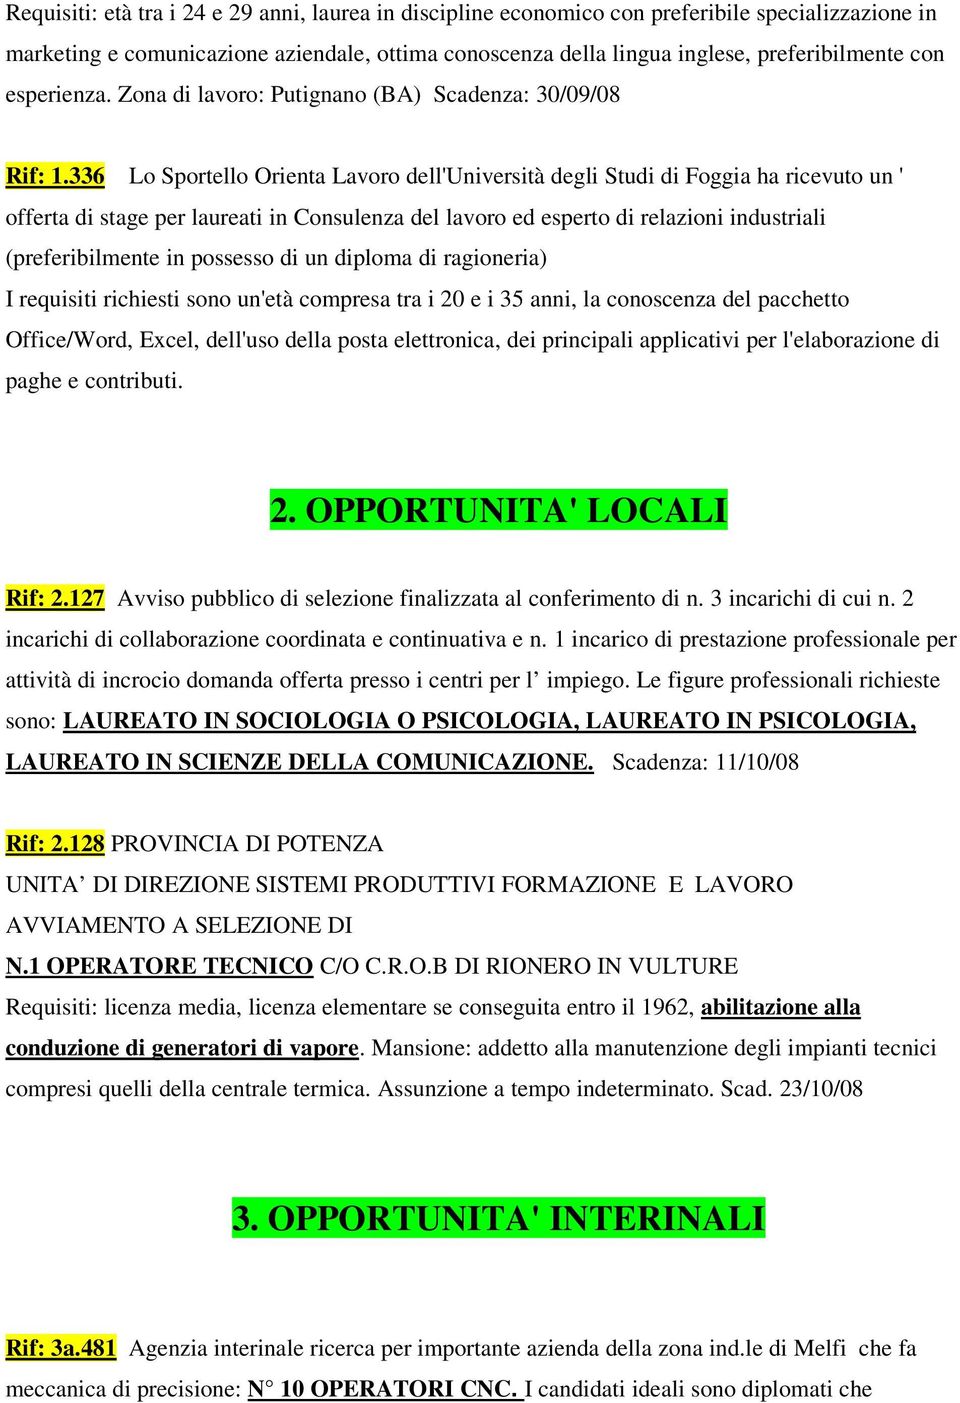 336 Lo Sportello Orienta Lavoro dell'università degli Studi di Foggia ha ricevuto un ' offerta di stage per laureati in Consulenza del lavoro ed esperto di relazioni industriali (preferibilmente in